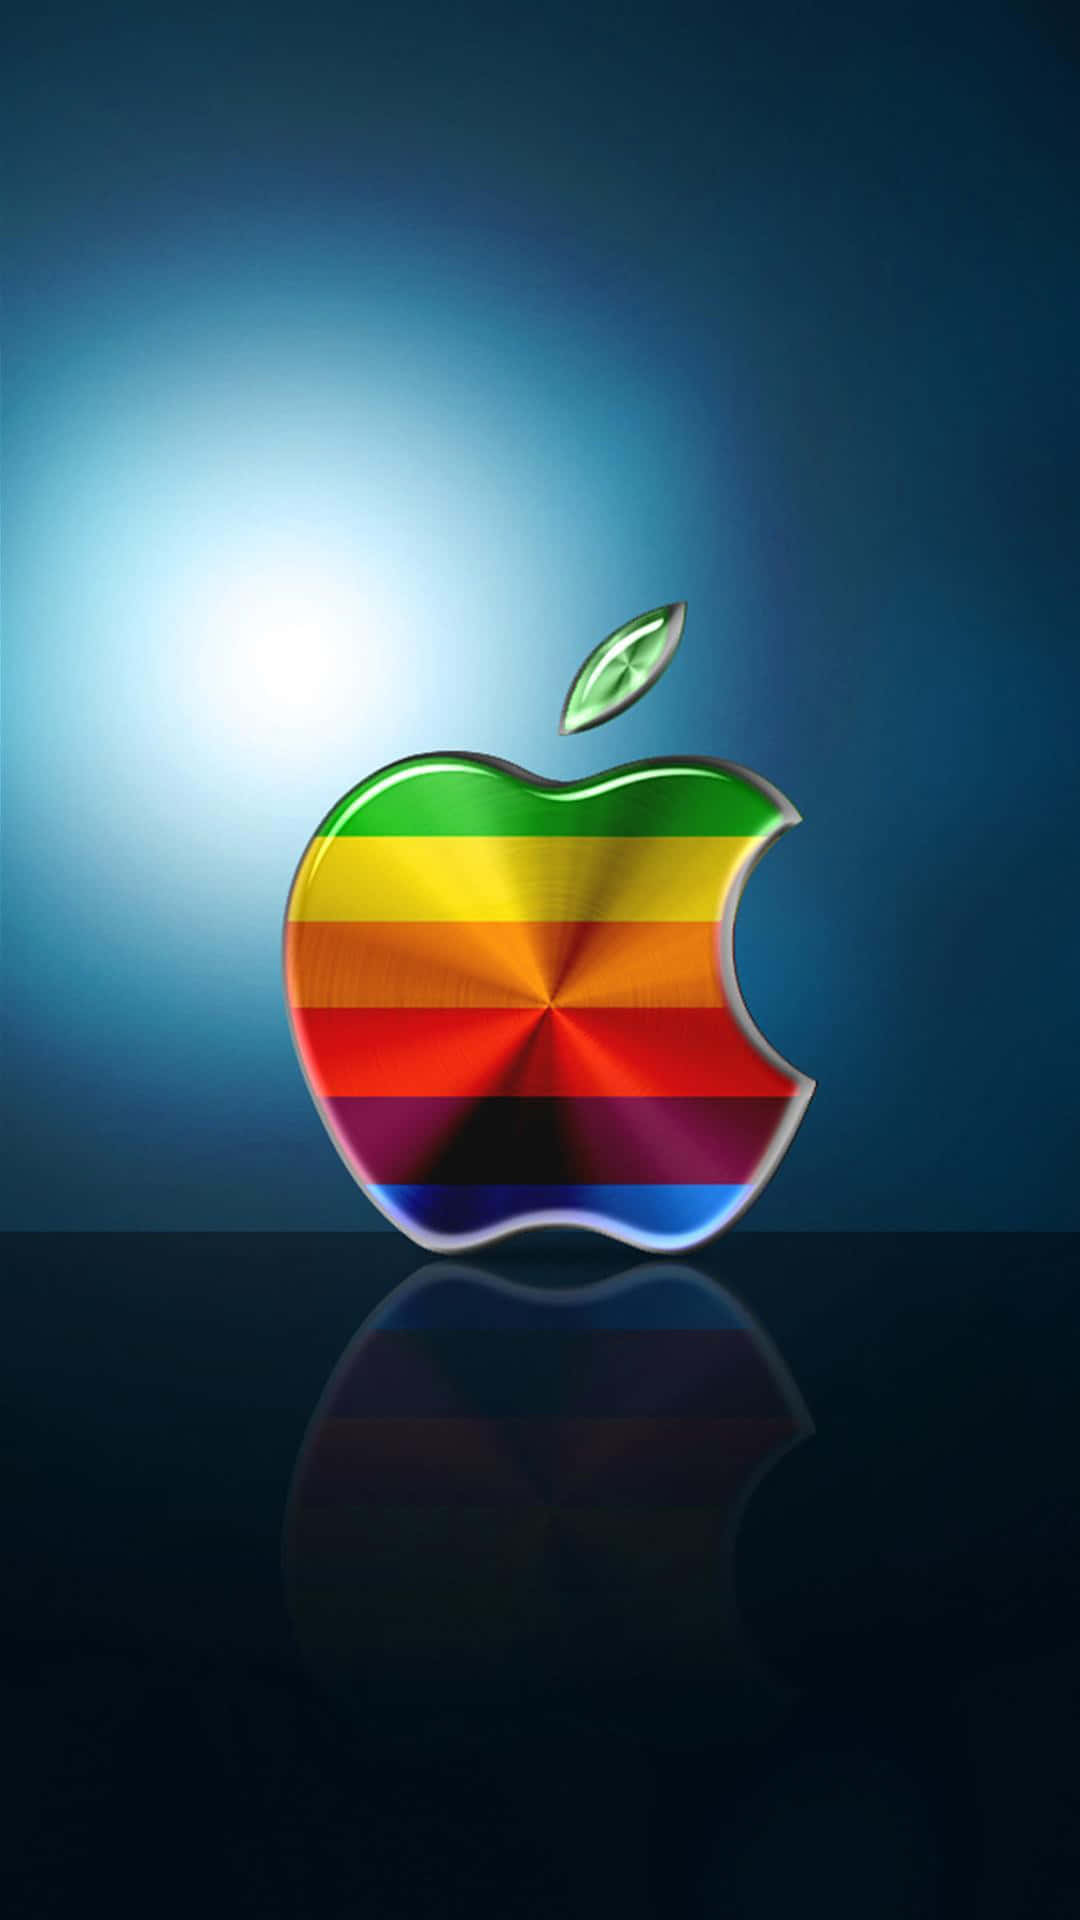 Papelde Parede Com Listras Coloridas E Logotipo Em 3d Incrível Da Apple Em Hd Para Iphone. Papel de Parede